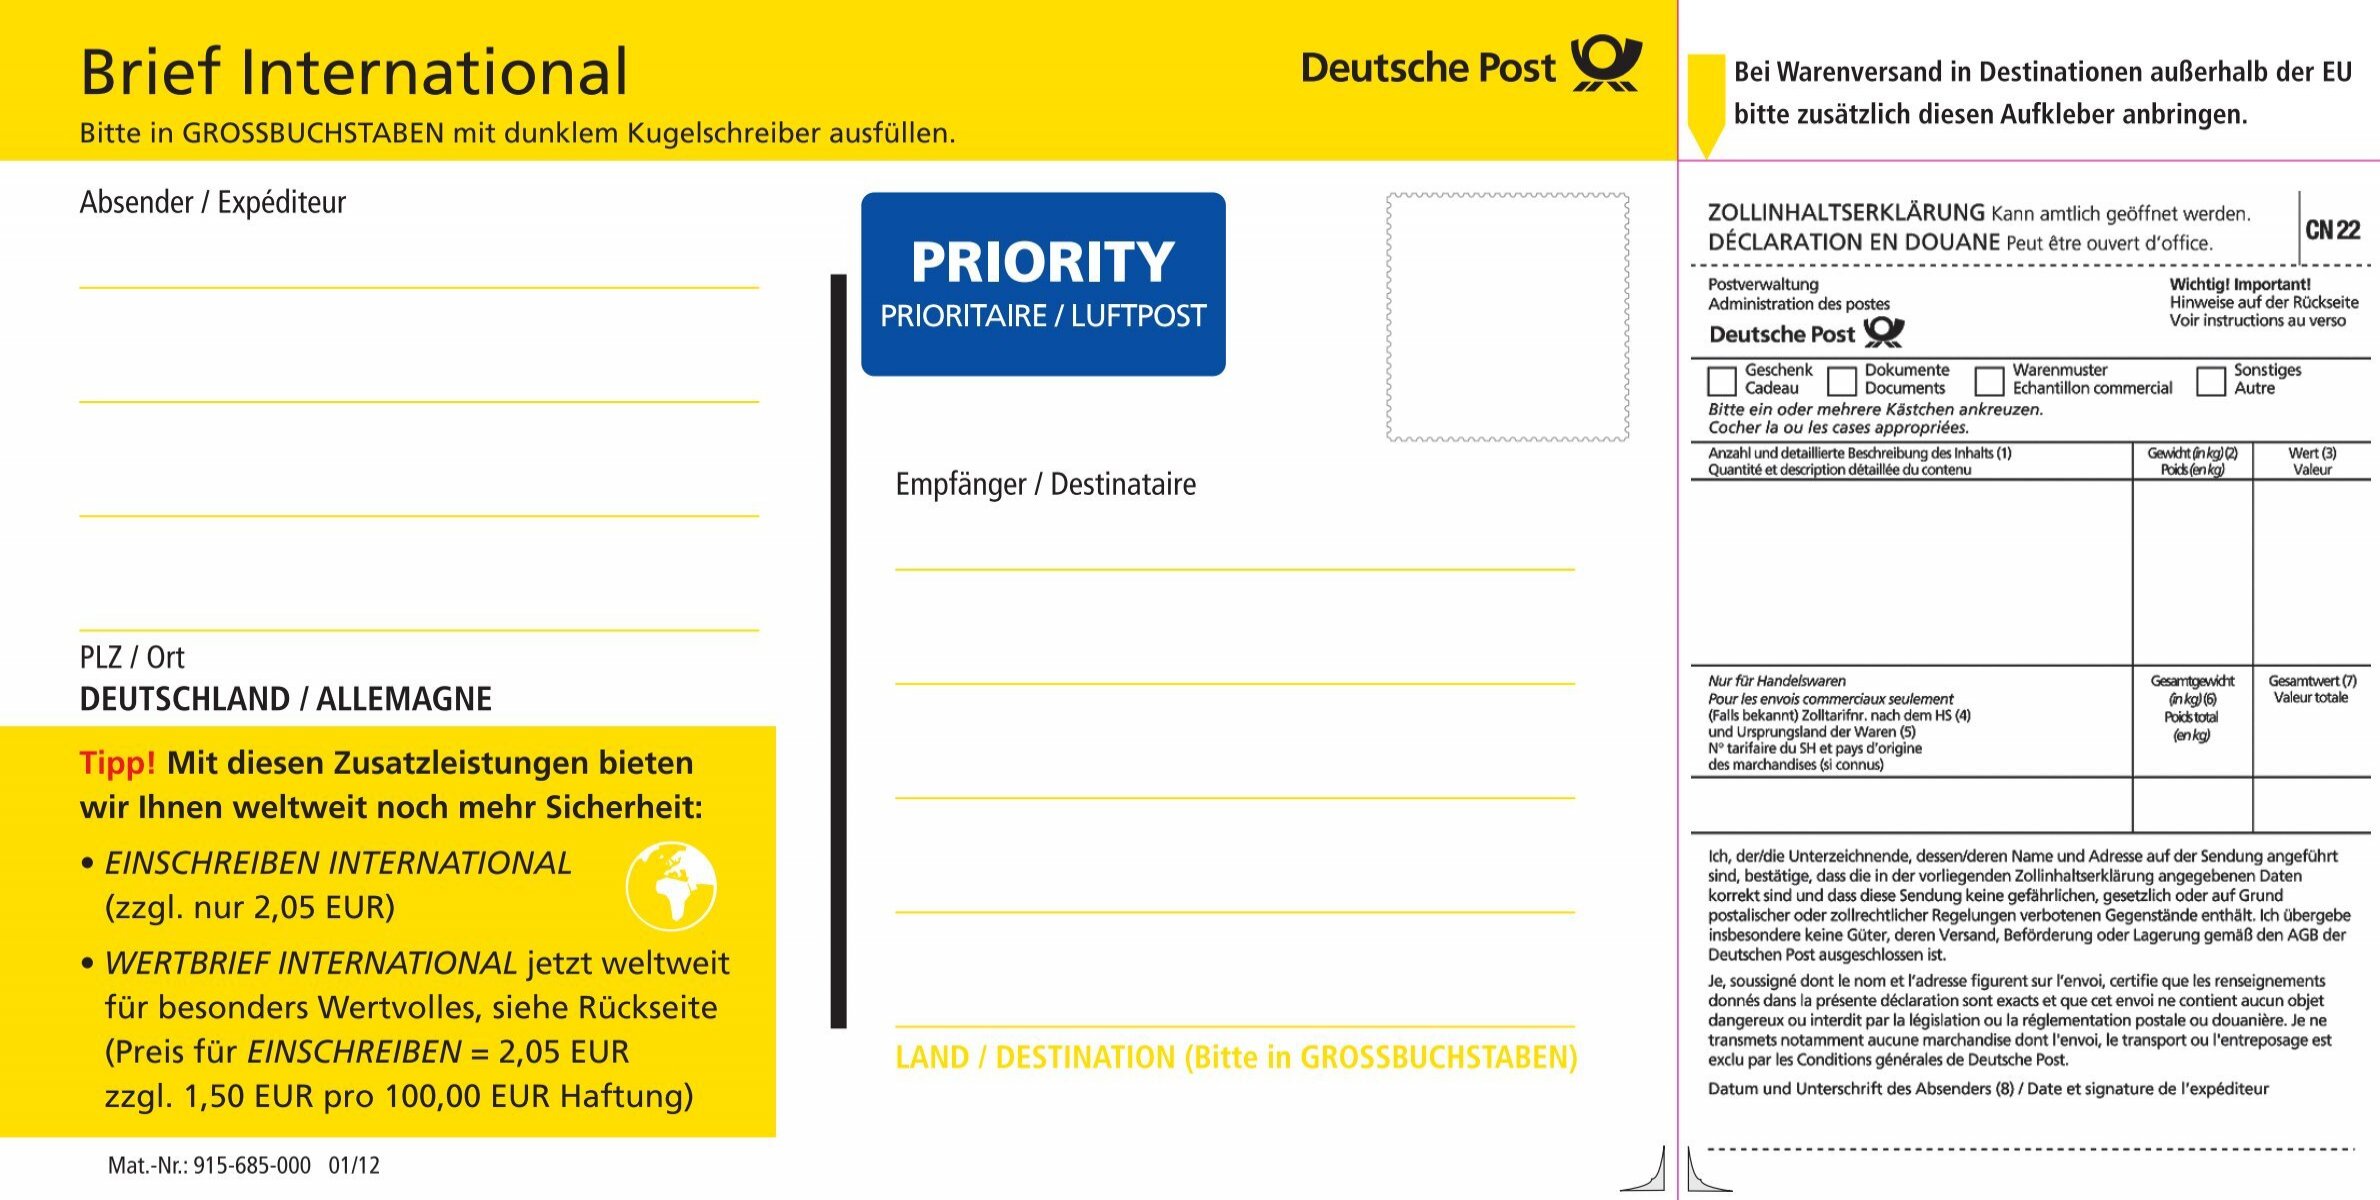 Deutsche Post Briefe International